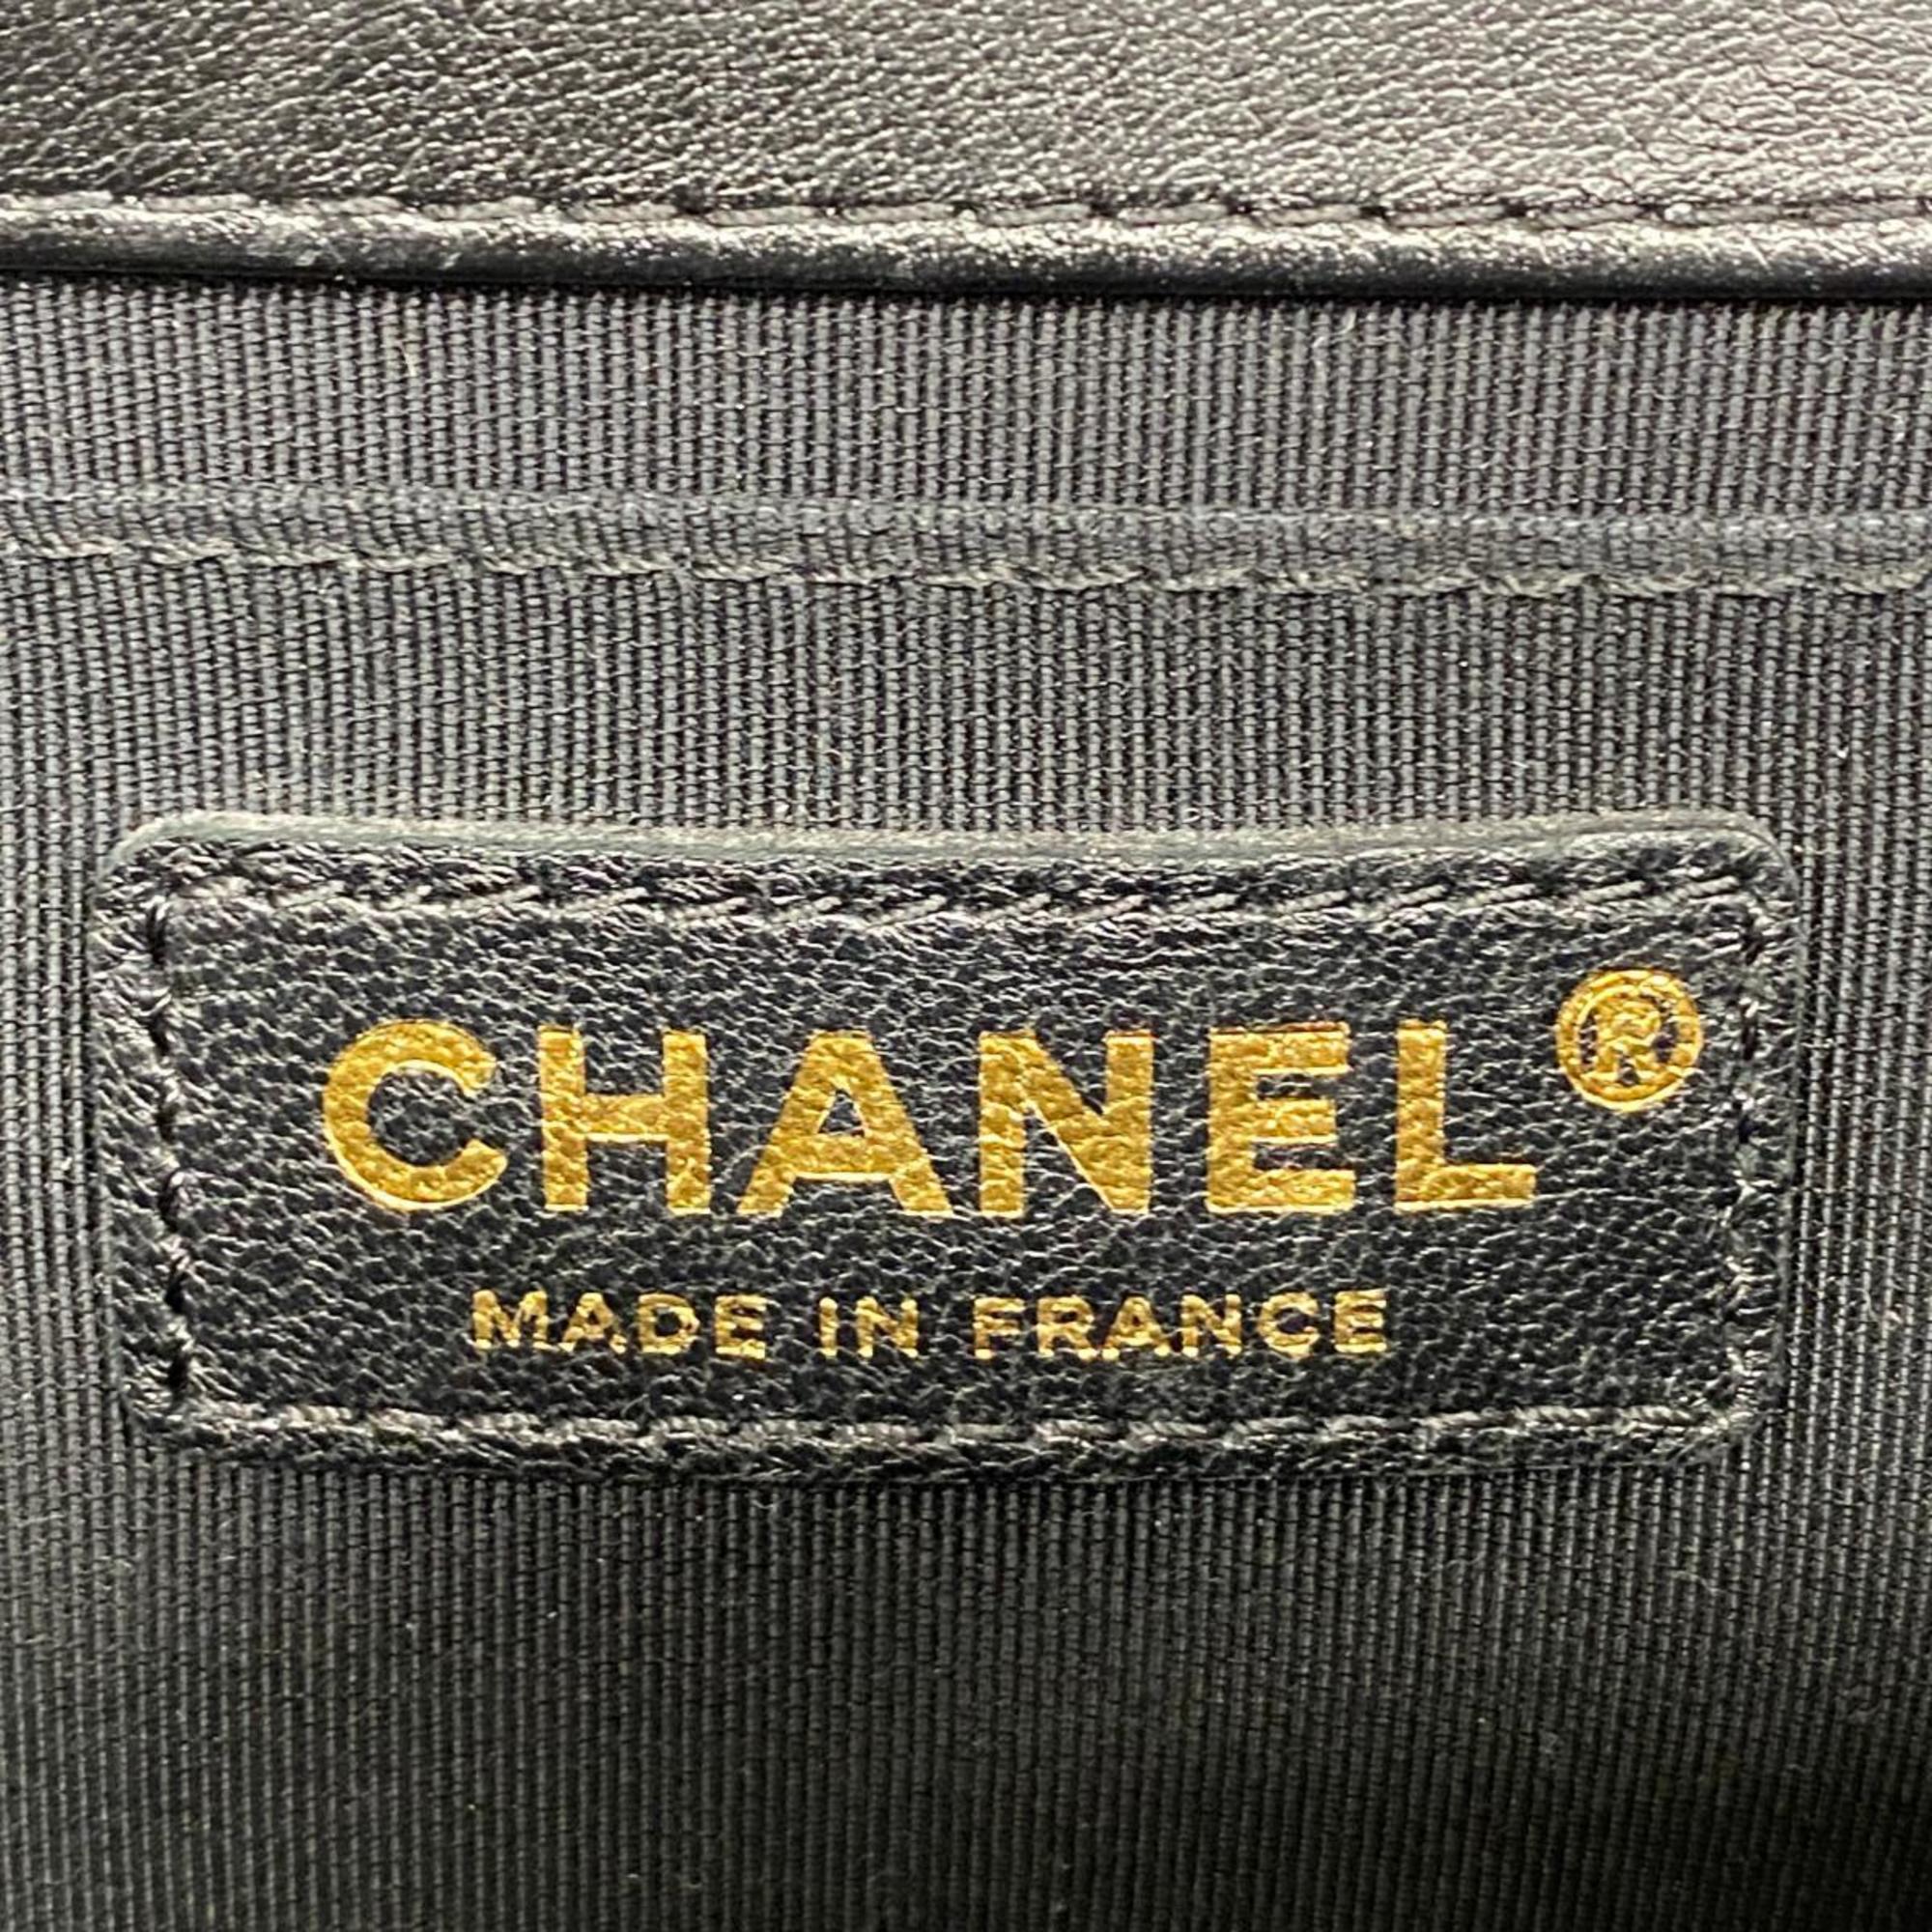 シャネル(Chanel) シャネル ハンドバッグ ボーイシャネル チェーンショルダー ラムスキン ブラック   レディース